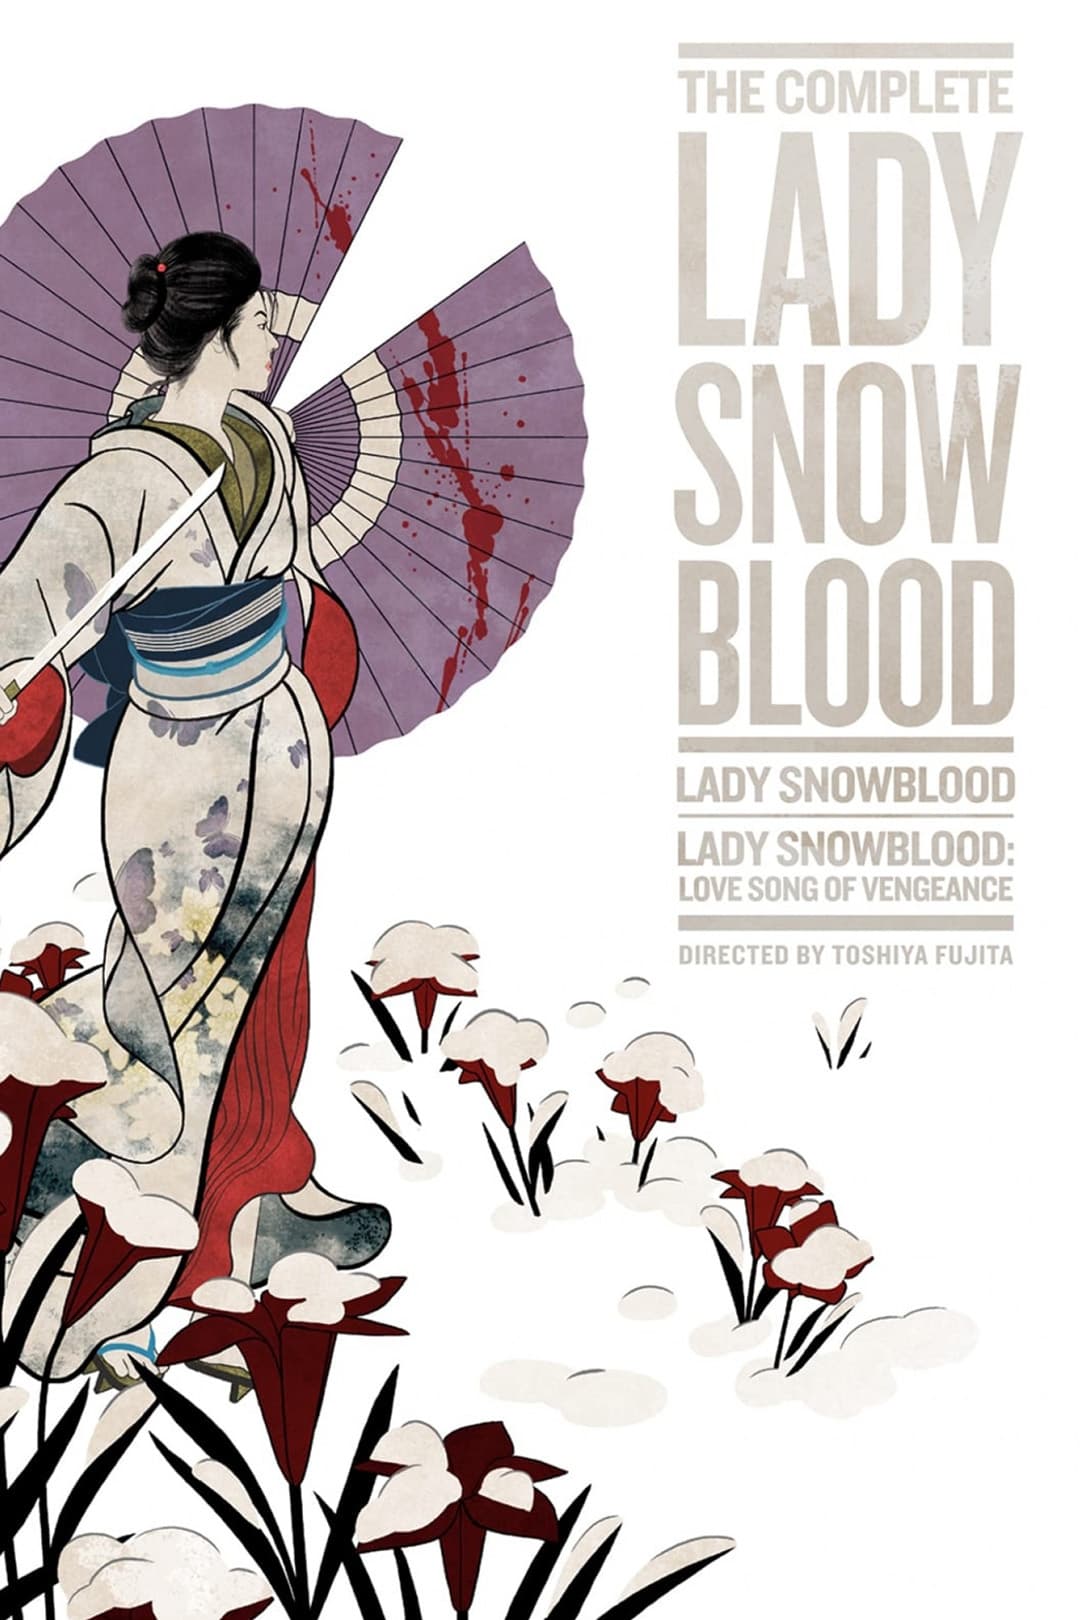 A Beautiful Demon: Kazuo Koike on 'Lady Snowblood'